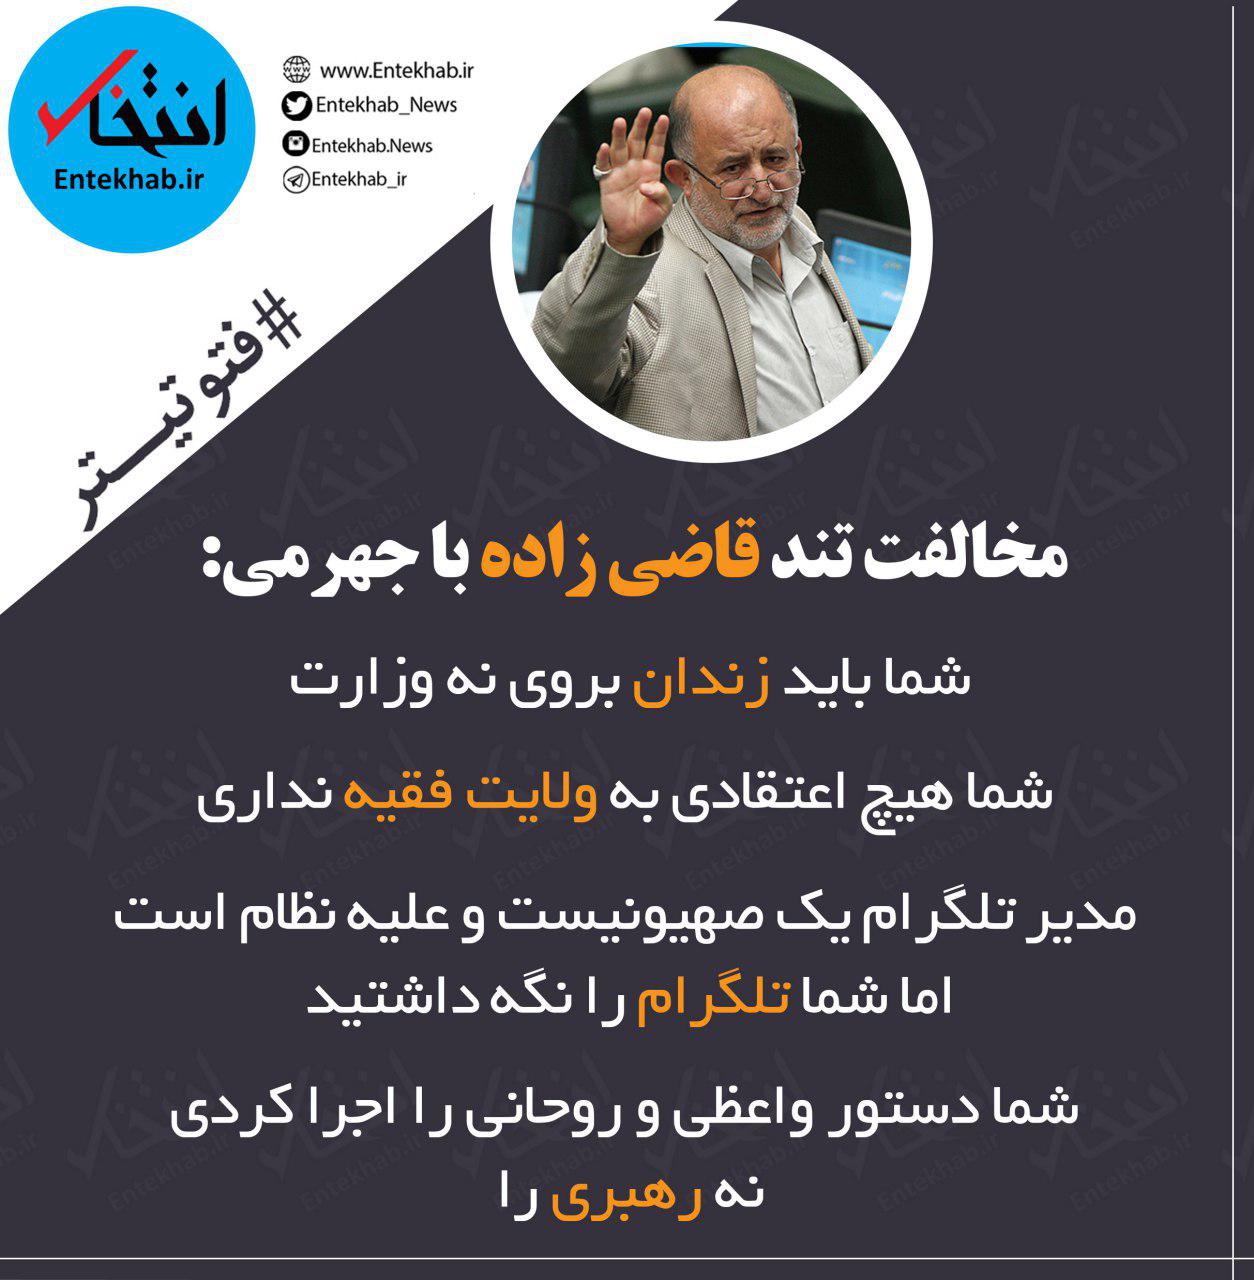 فتوتیترهای سه شنبه: از صبر ایوب ظریف تا نطق تند نماینده جنجالی علیه وزیر دهه شصتی روحانی